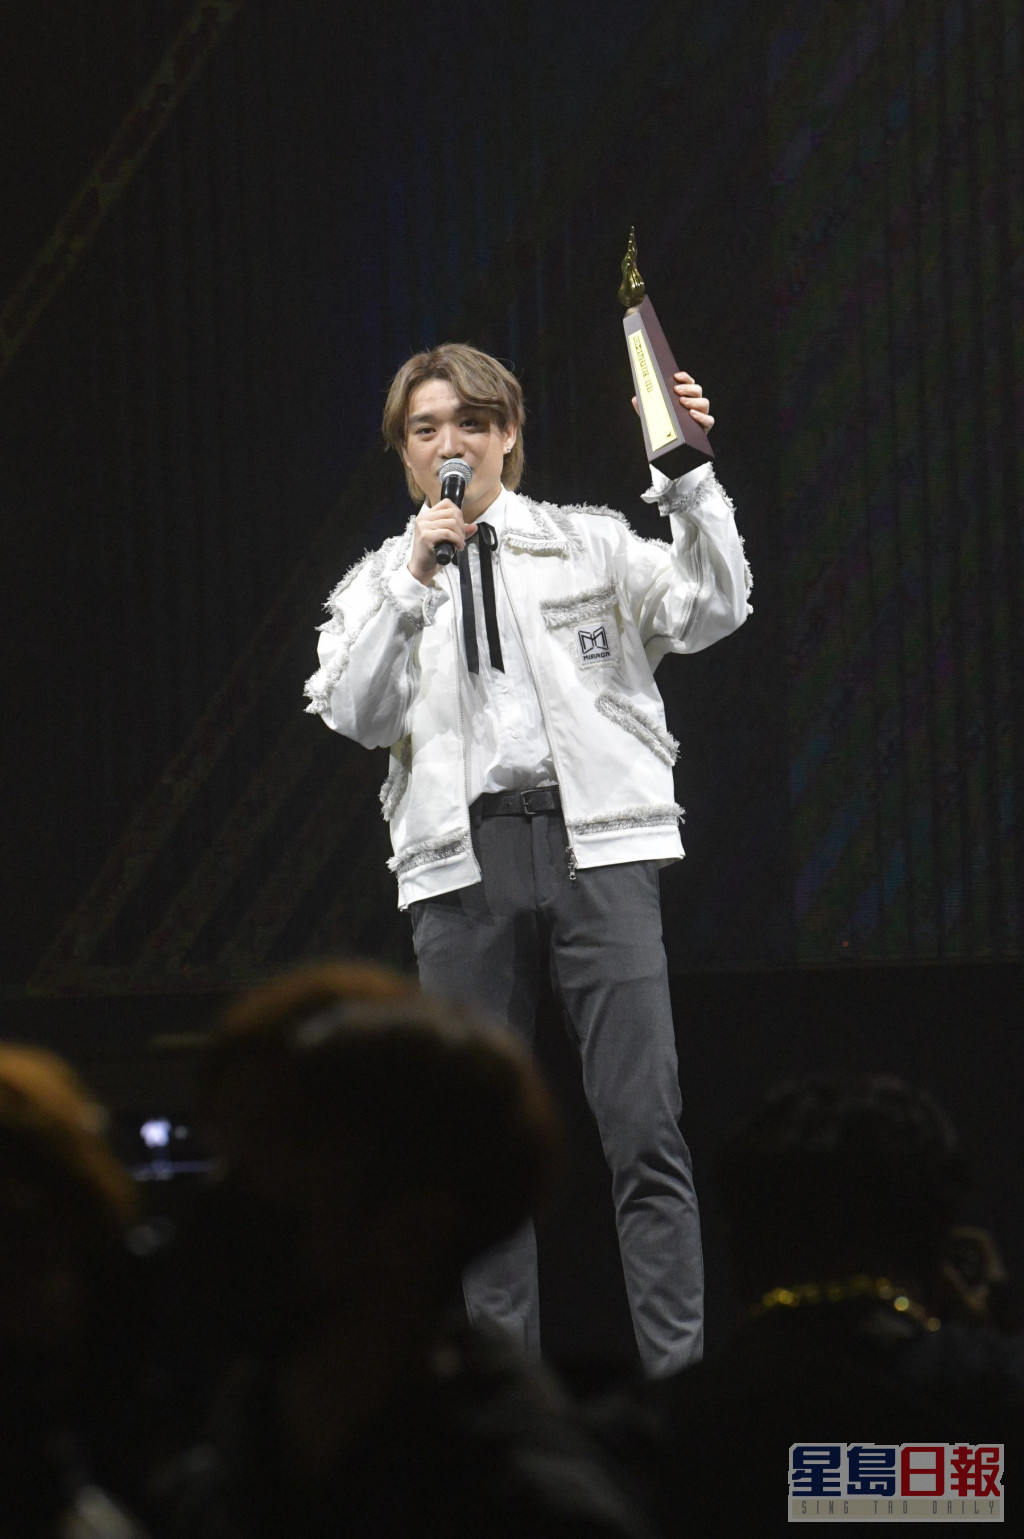 柳应廷(Jer )的《狂人日记》夺得《2021年度叱咤乐坛流行榜颁奖礼》叱咤歌曲第六位。